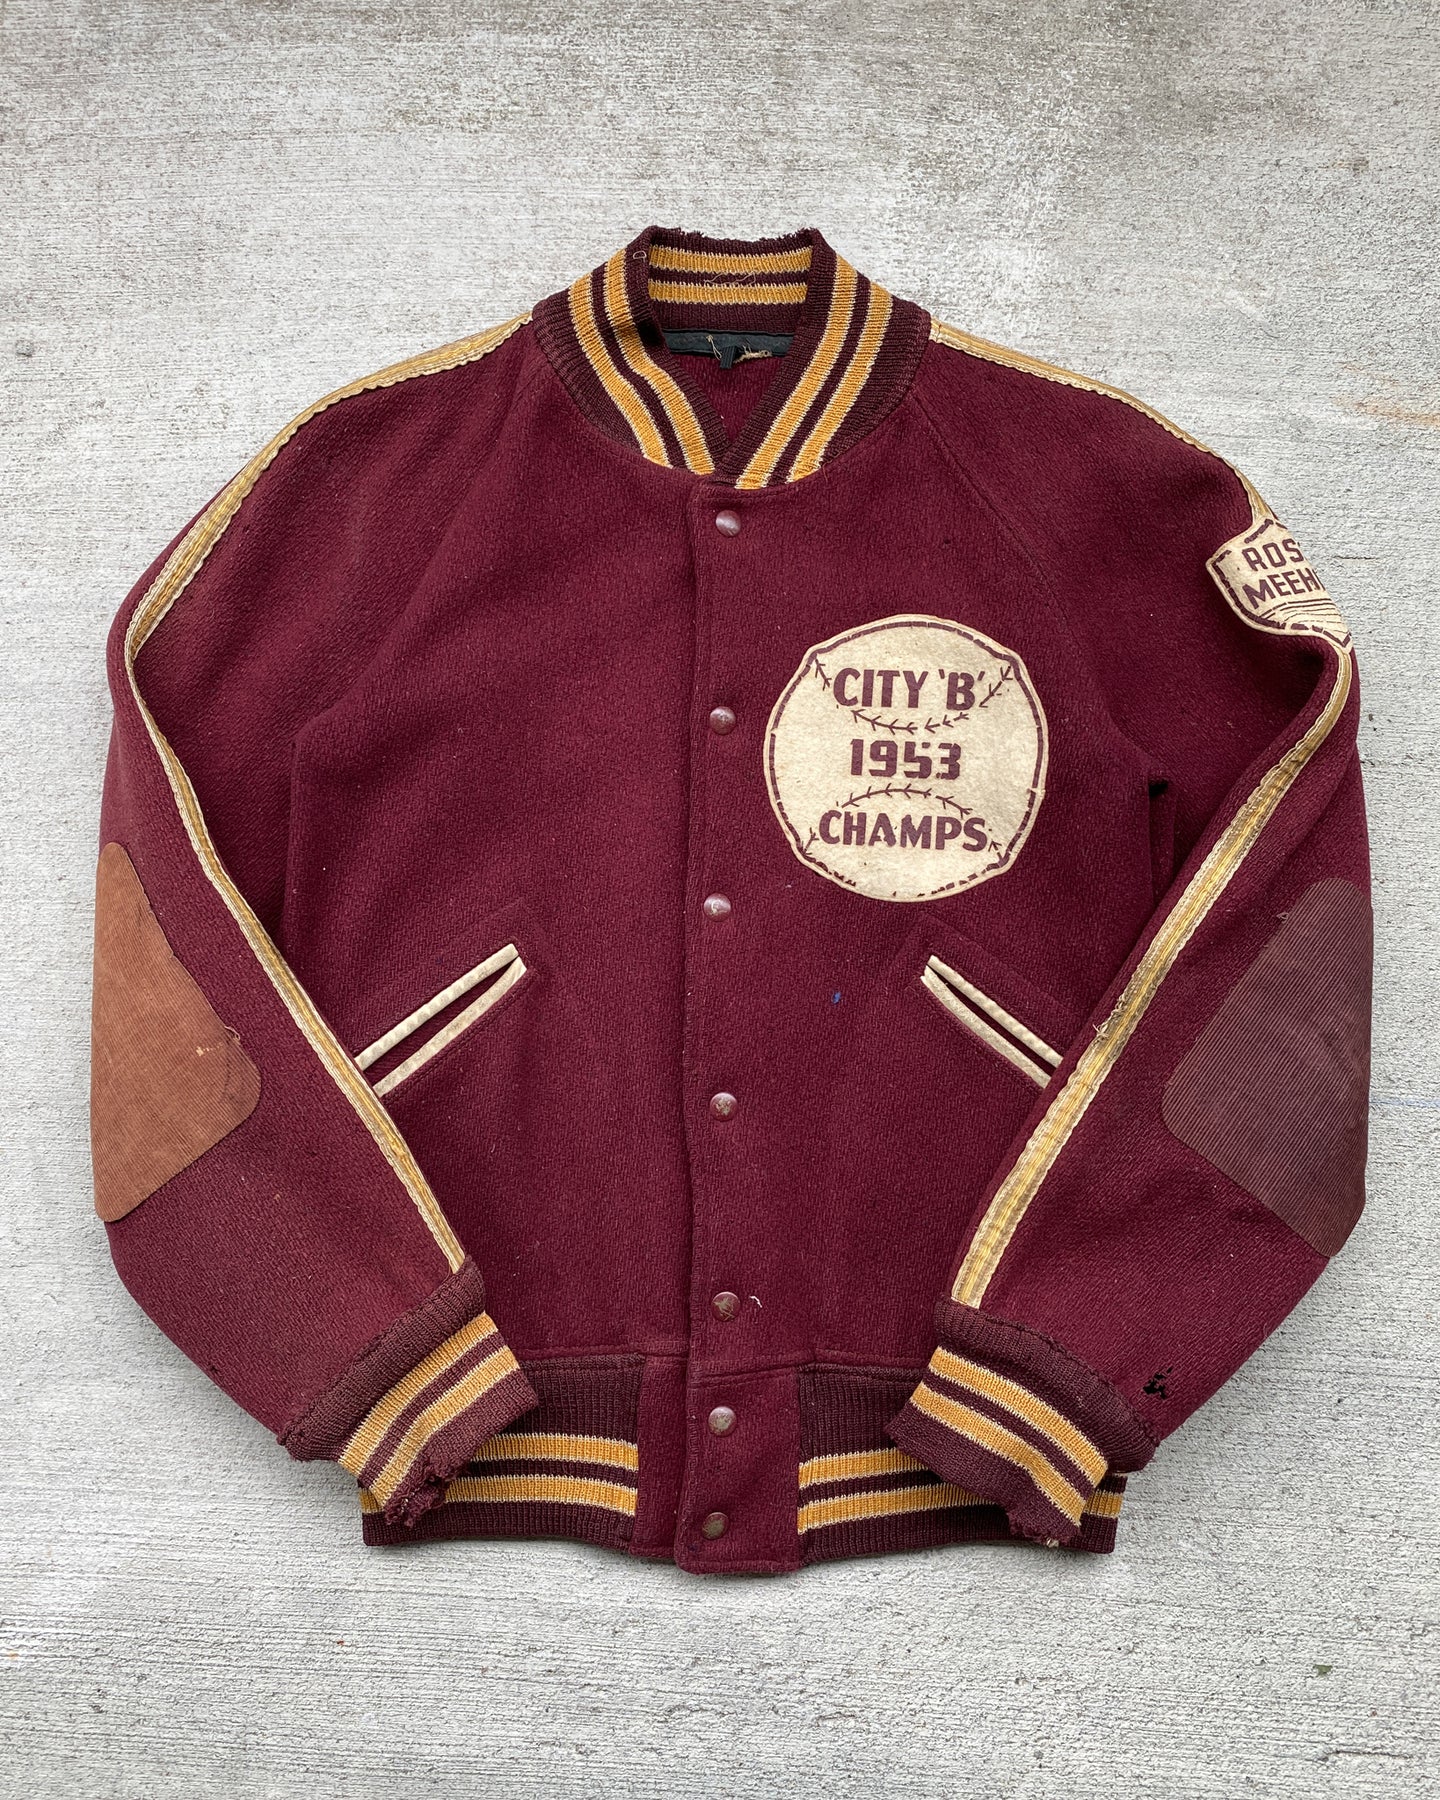 1953 City B Champs Baseball Varsity Bomber Jacket - Size Large